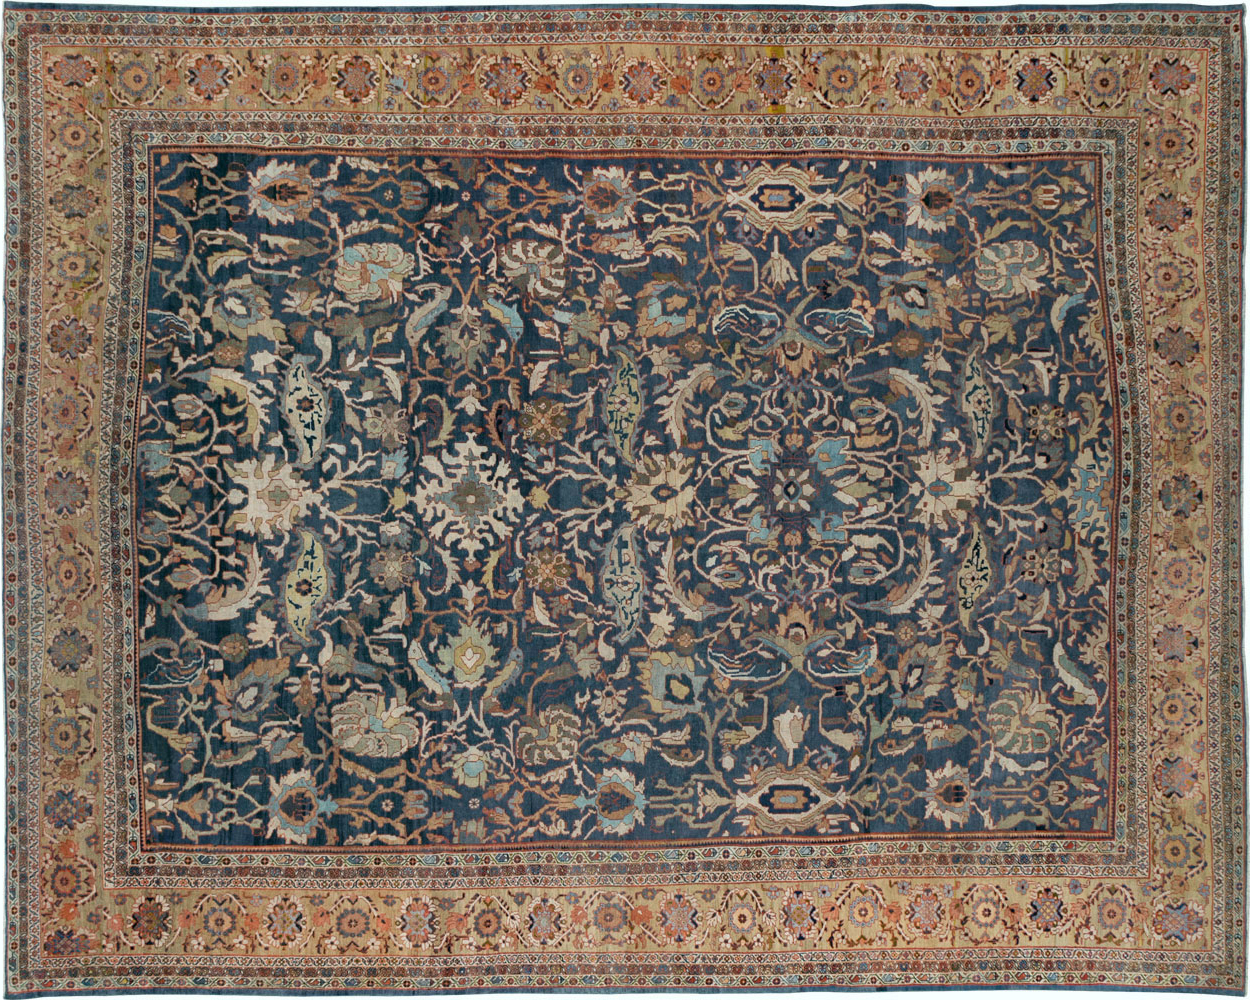 Antique sultan abad Carpet - # 53562